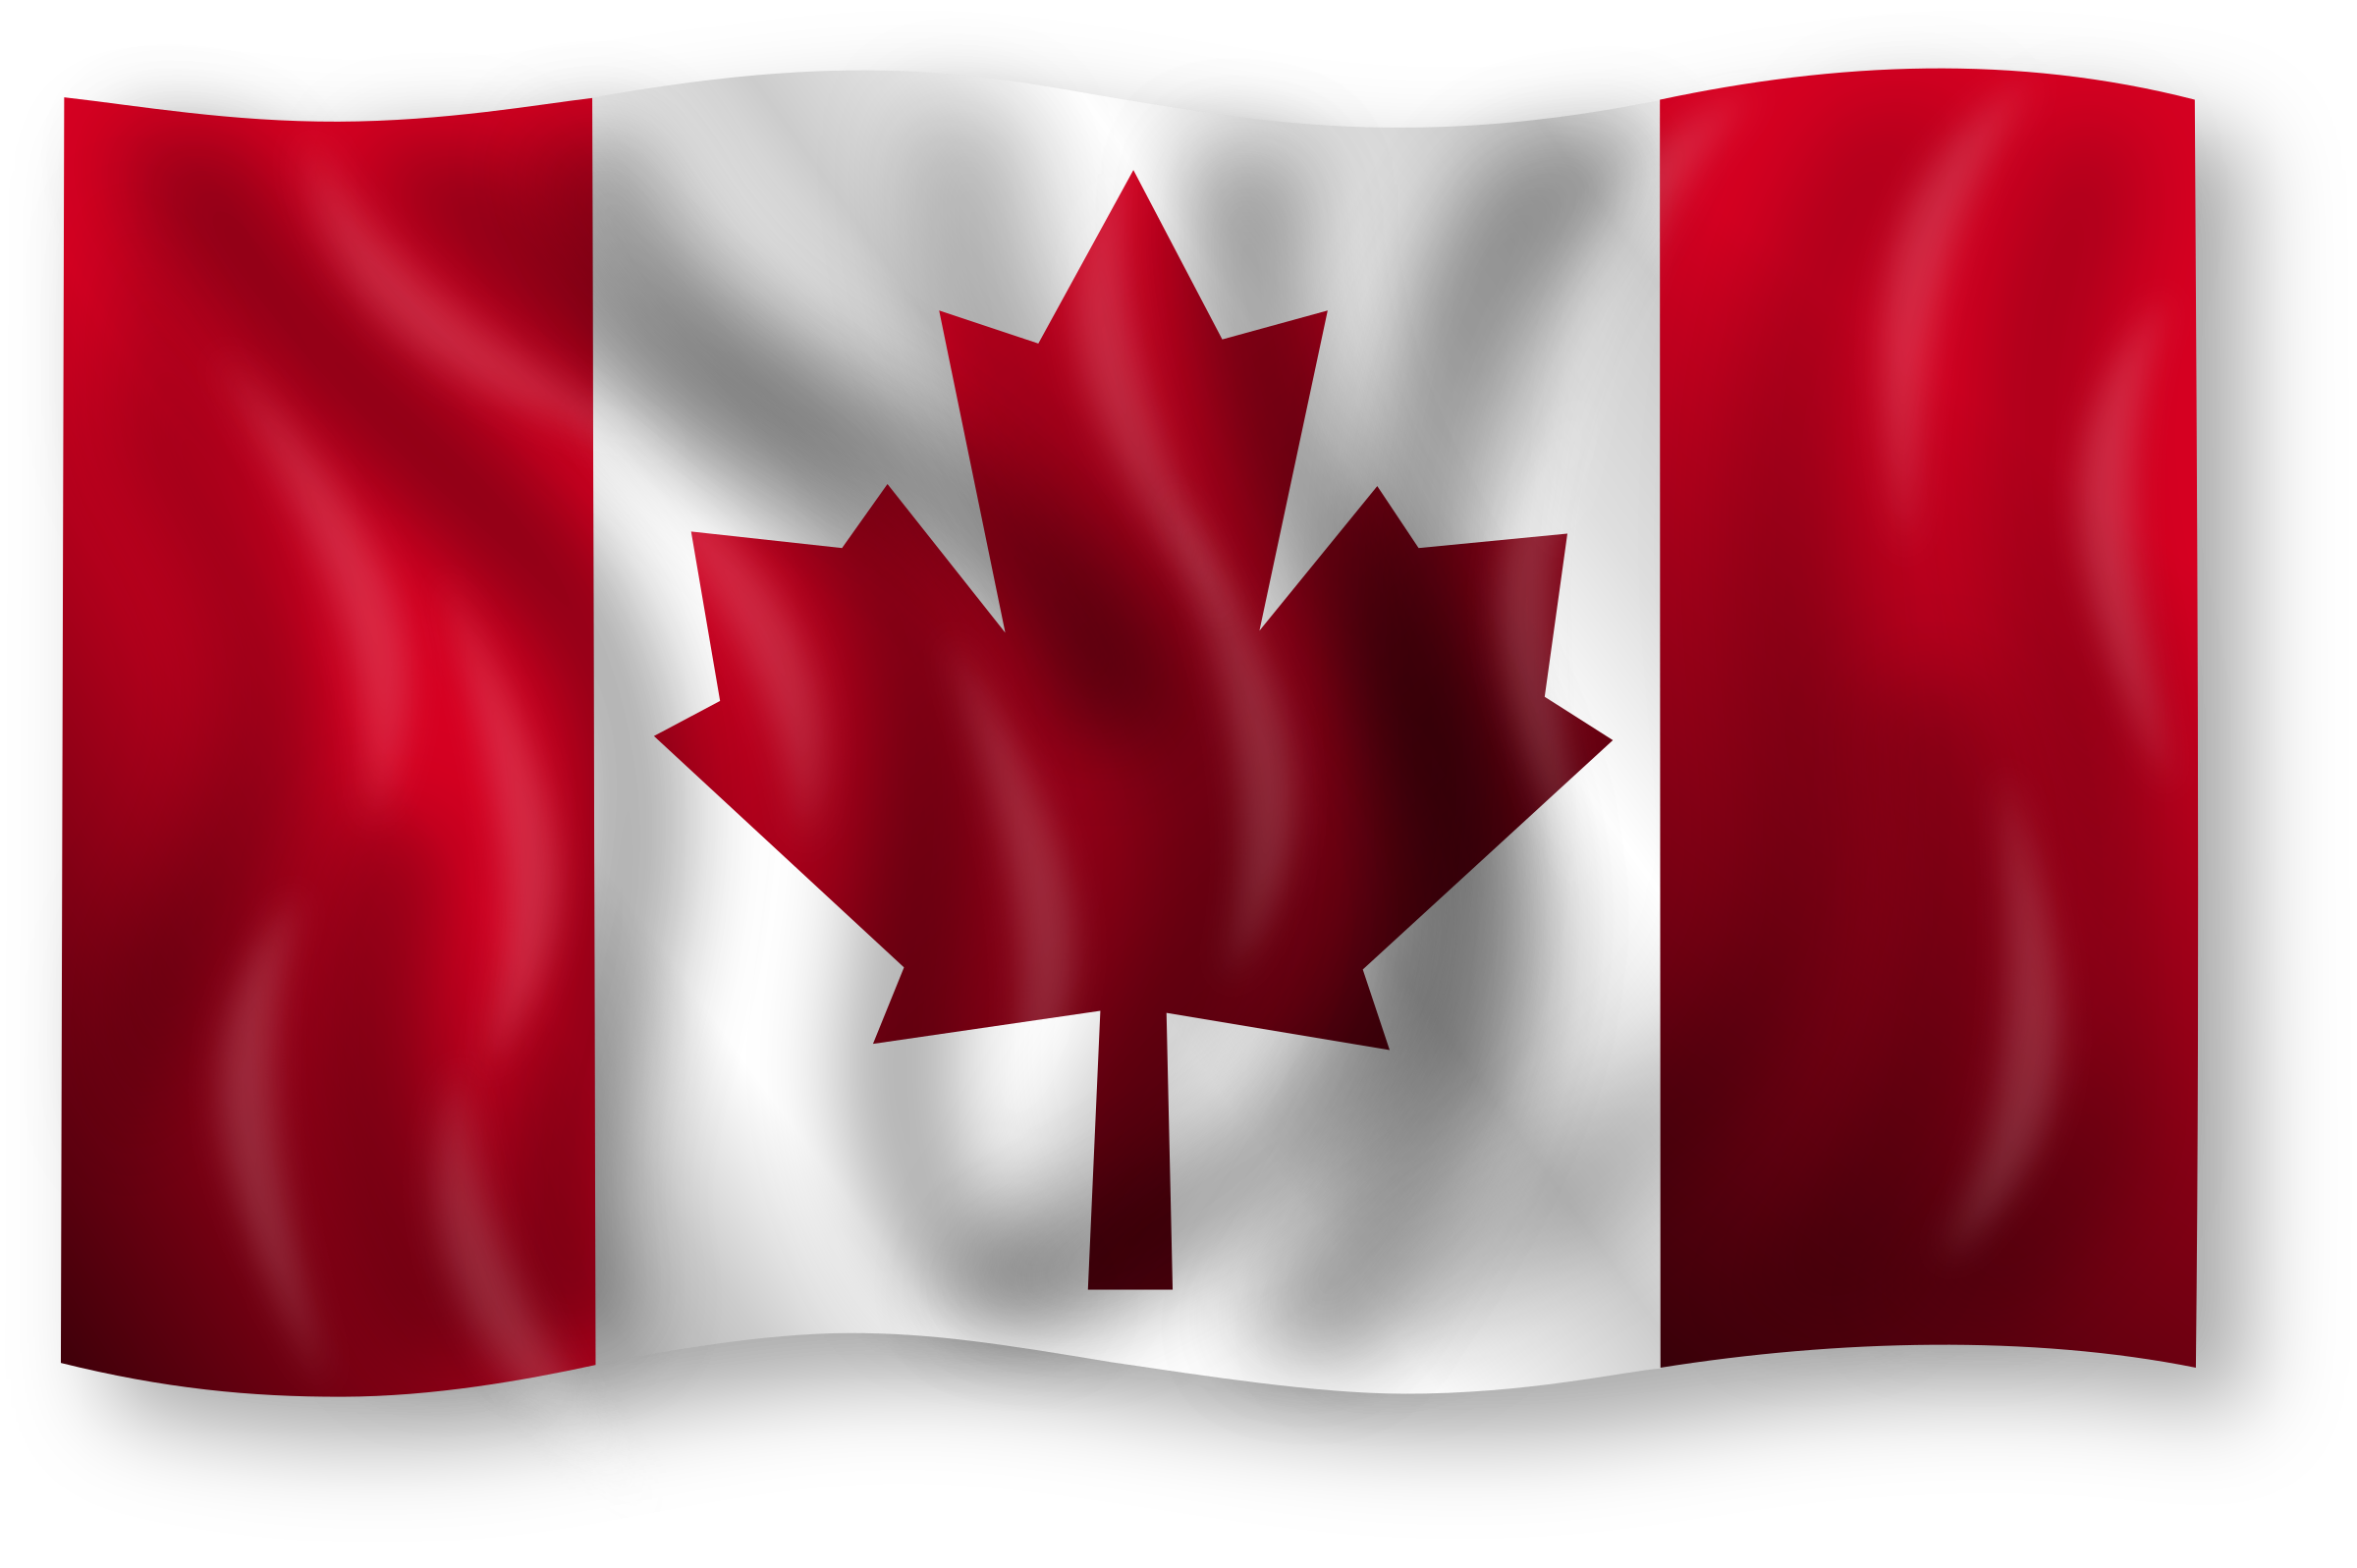 Bandeira canadense